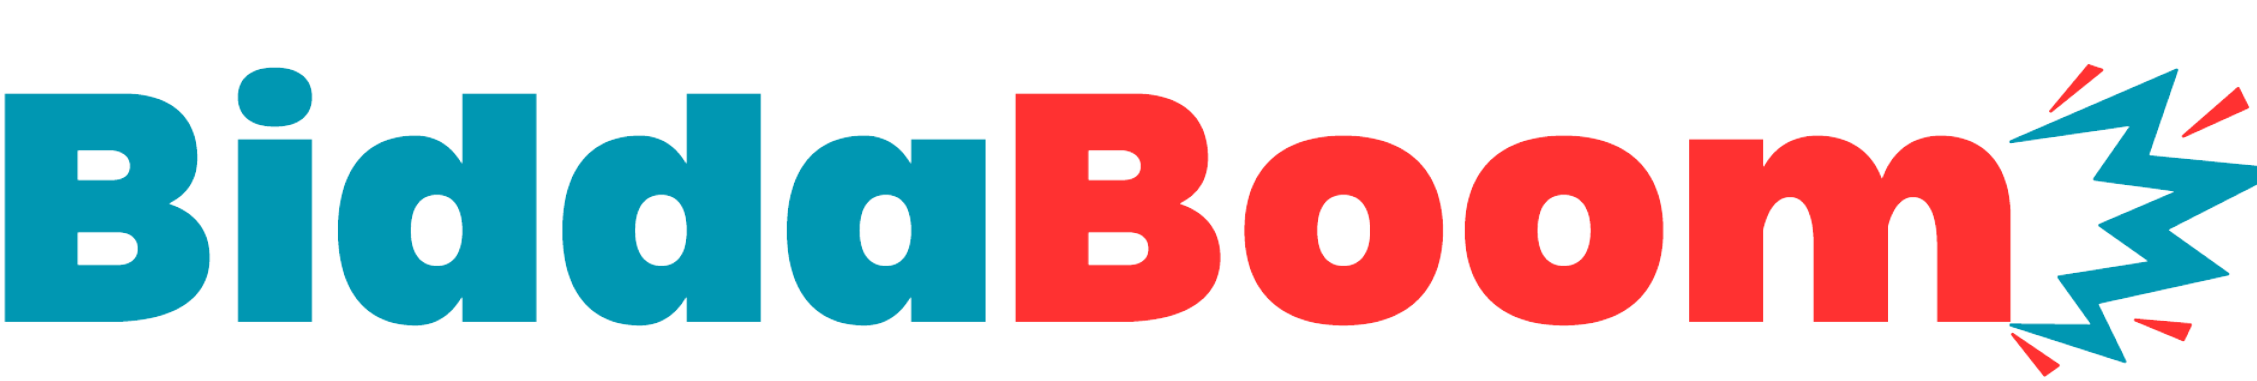 BiddaBoom logo